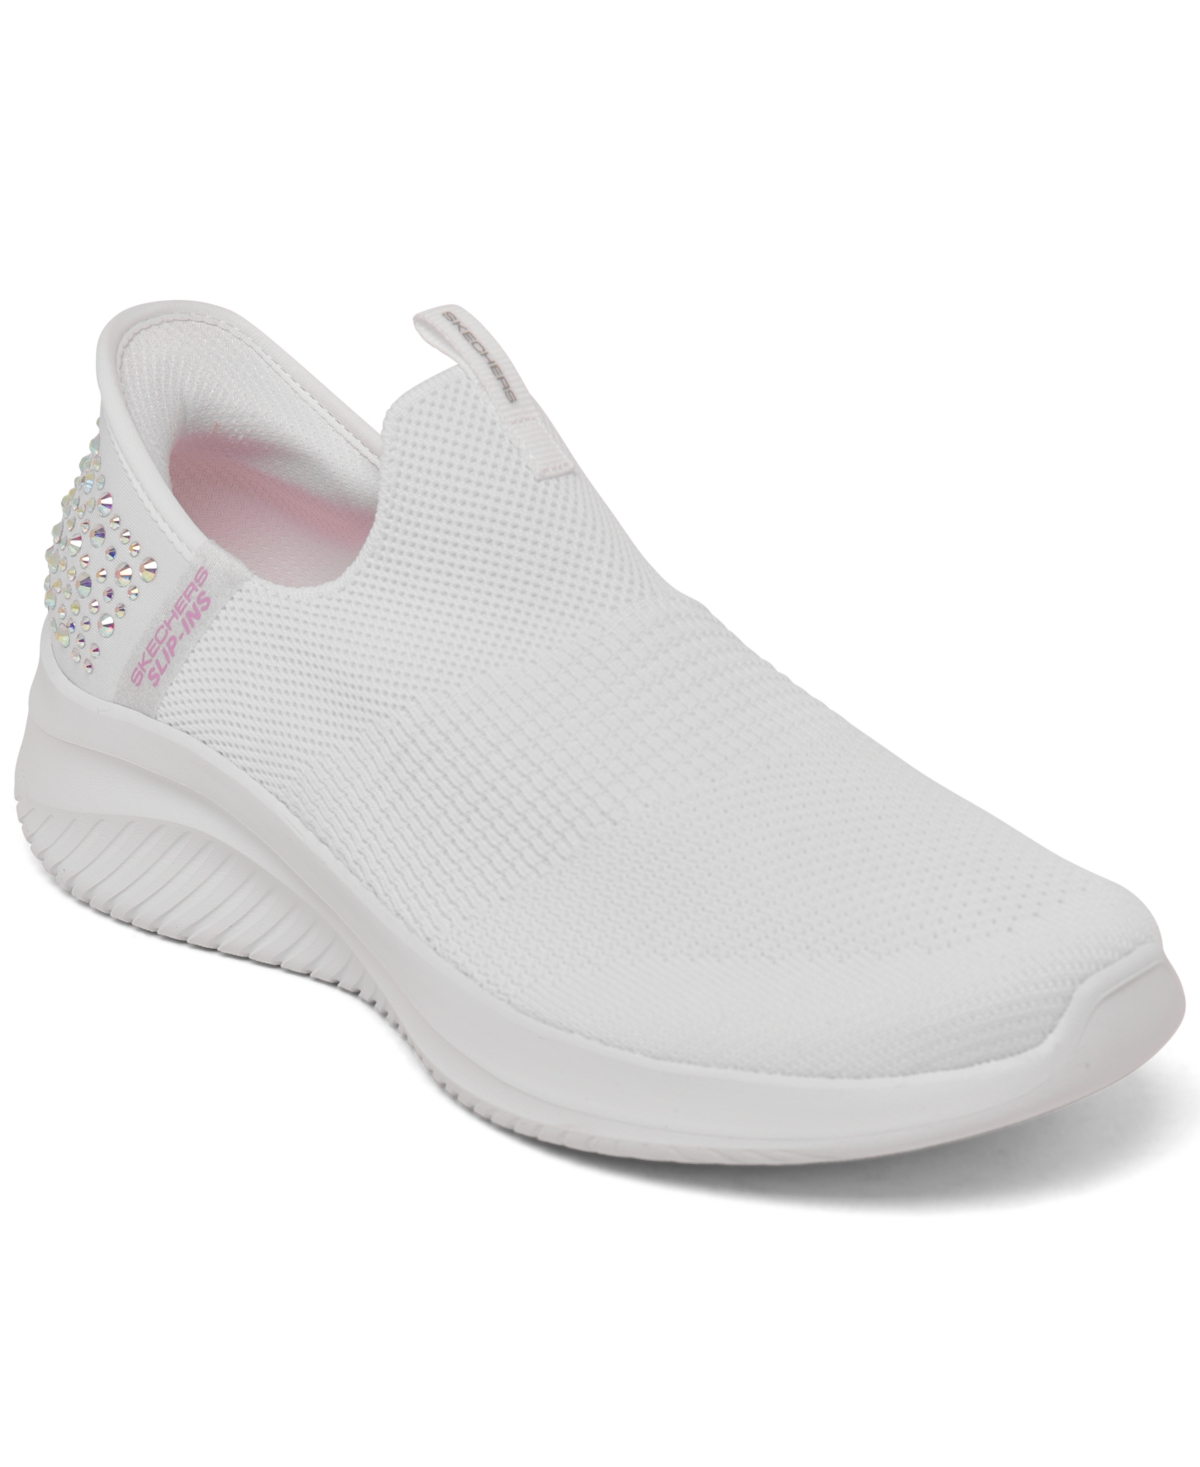 Women's Slip-Ins: Ultra Flex 3.0 - Sparkled Stones Slip-On Walking Sneakers from Finish Line - White